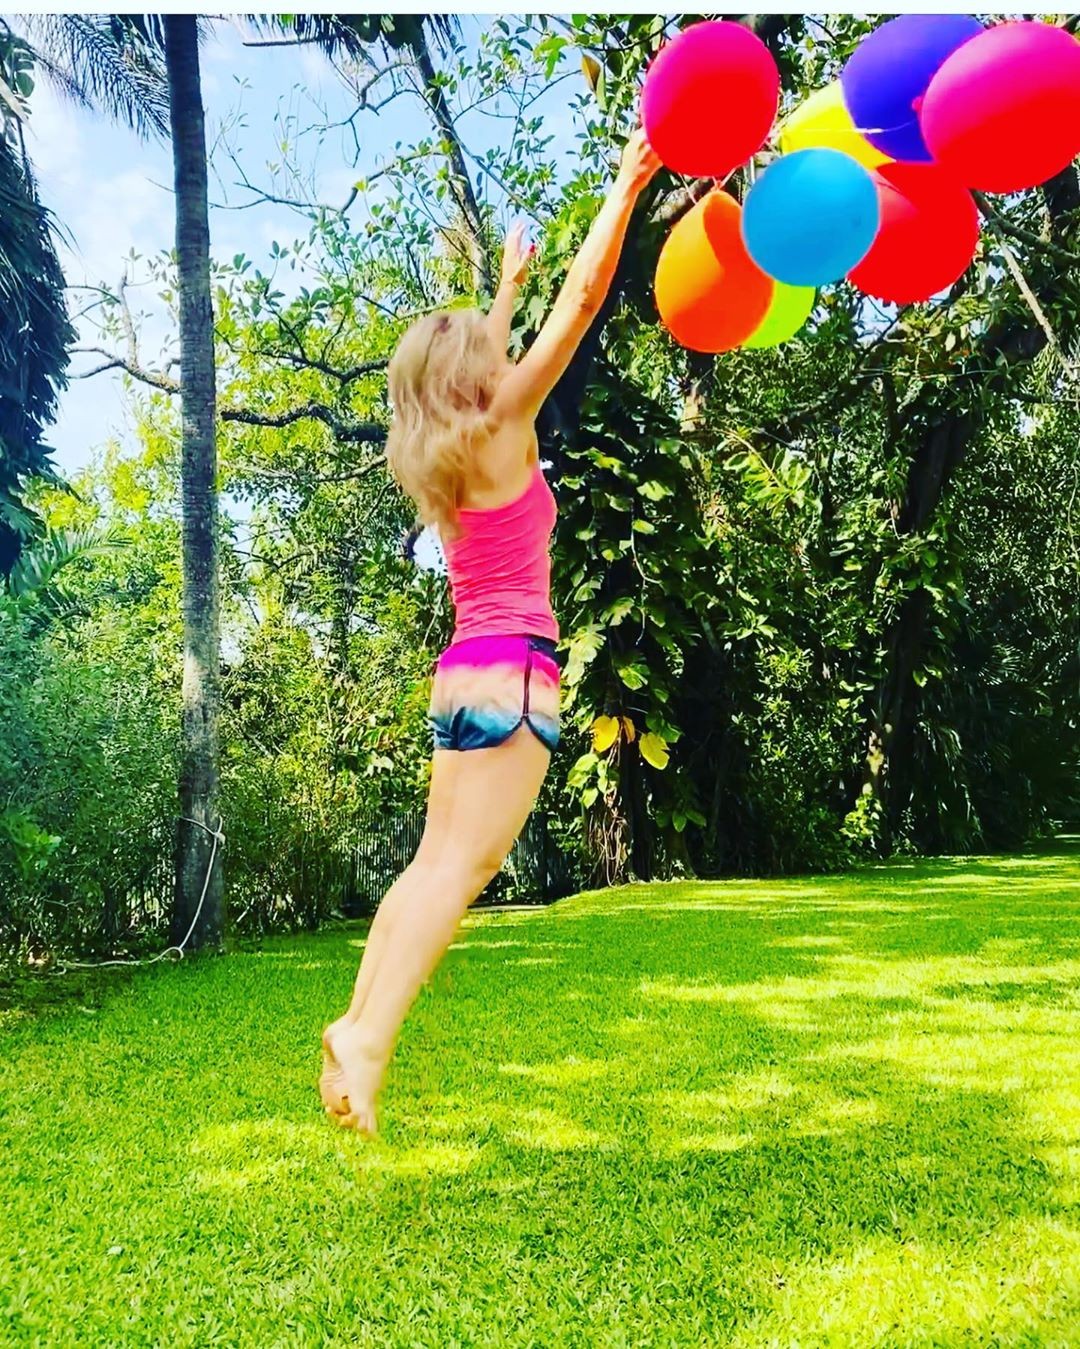 Angélica voa com balões em clique colorido (Foto: Reprodução/Instagram)